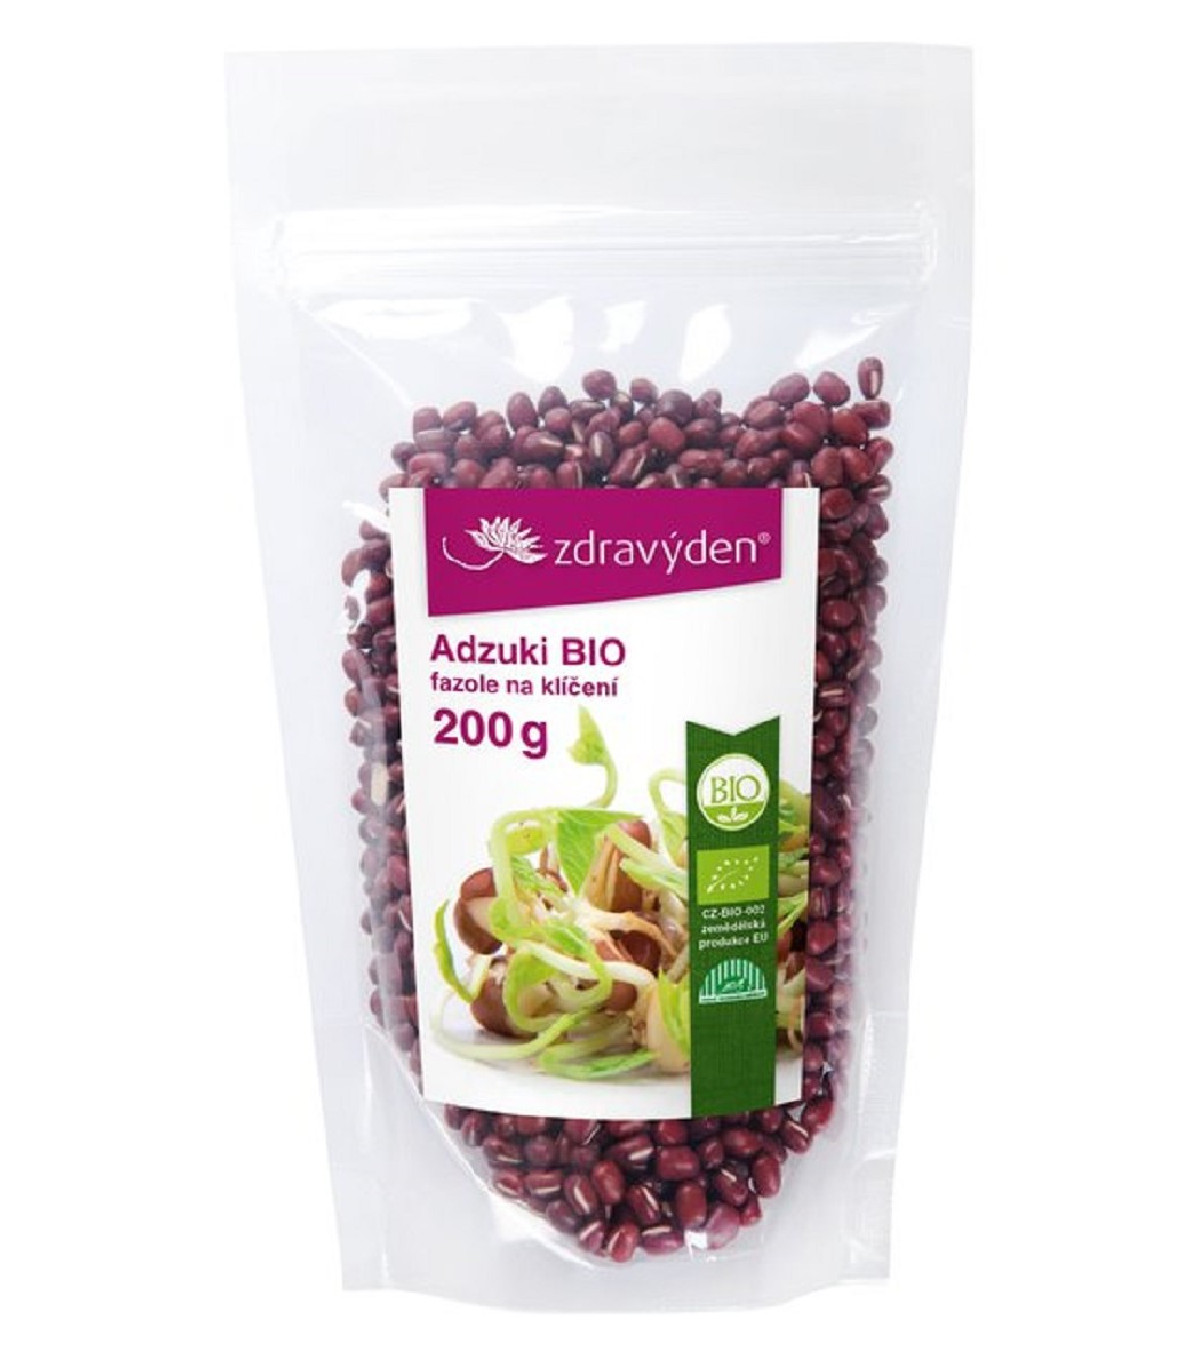 BIO Adzuki - Zdravý den - bio osivo na klíčky - 200 g